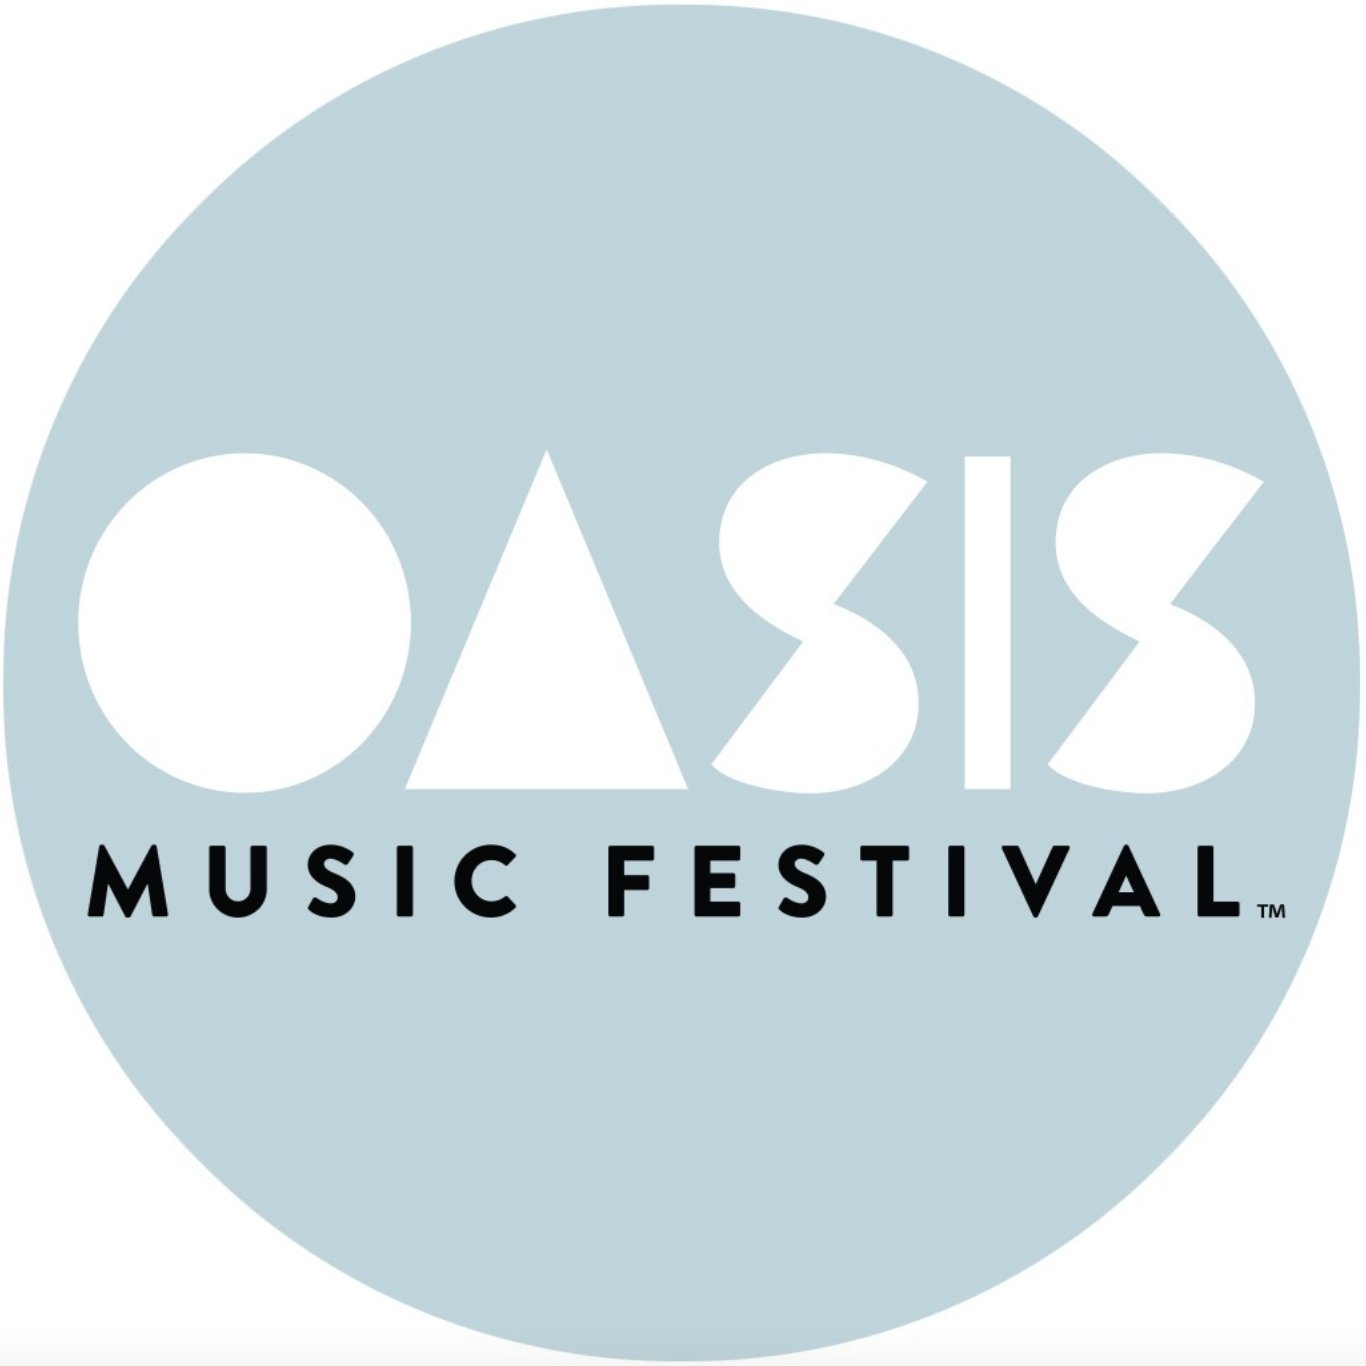 Oasis Music Festival profile image